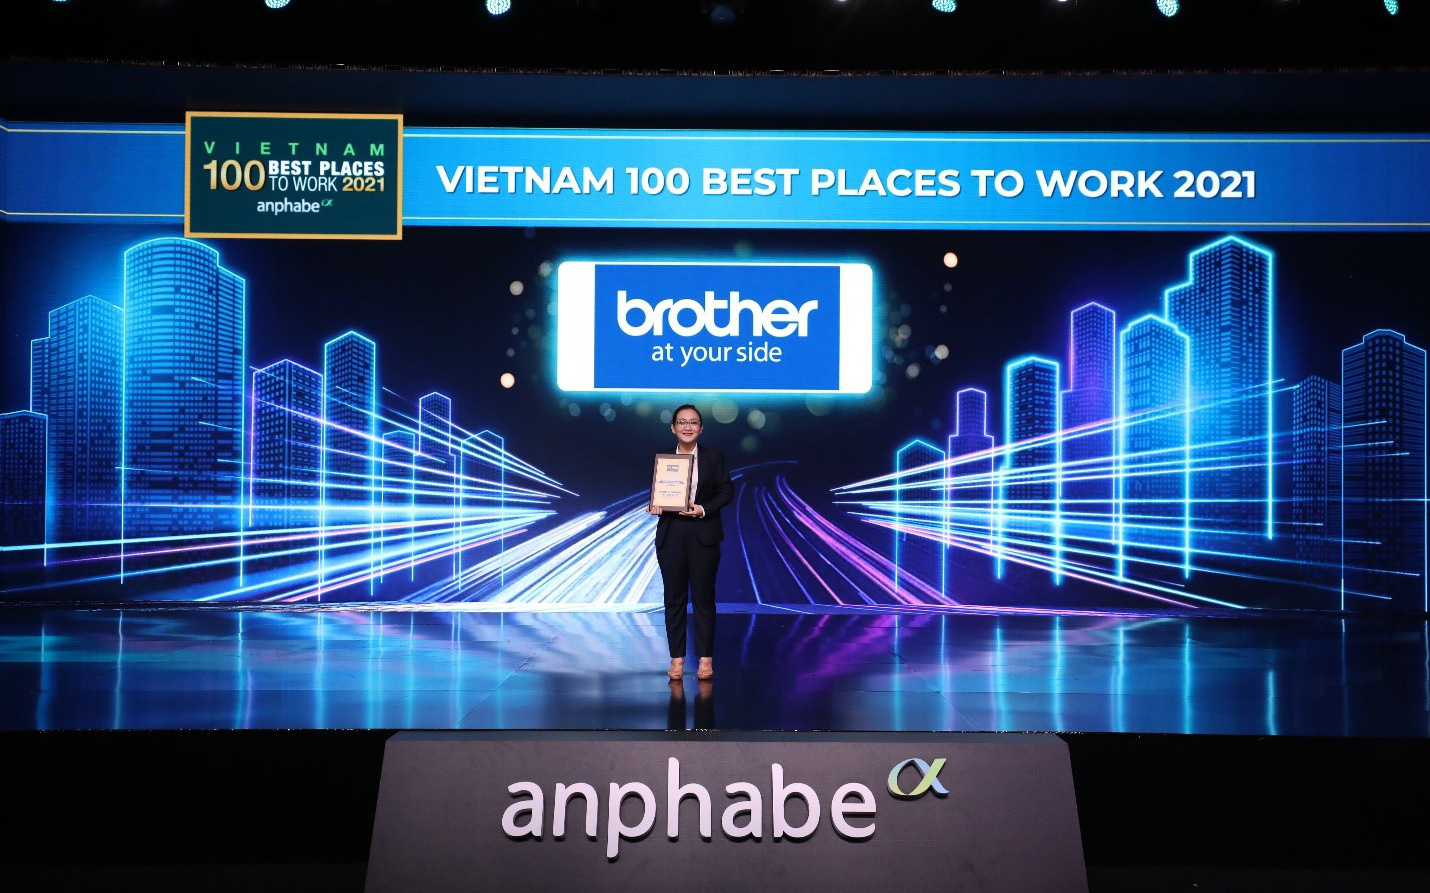 Brother liên tiếp được bình chọn là nơi việc tốt nhất Việt Nam